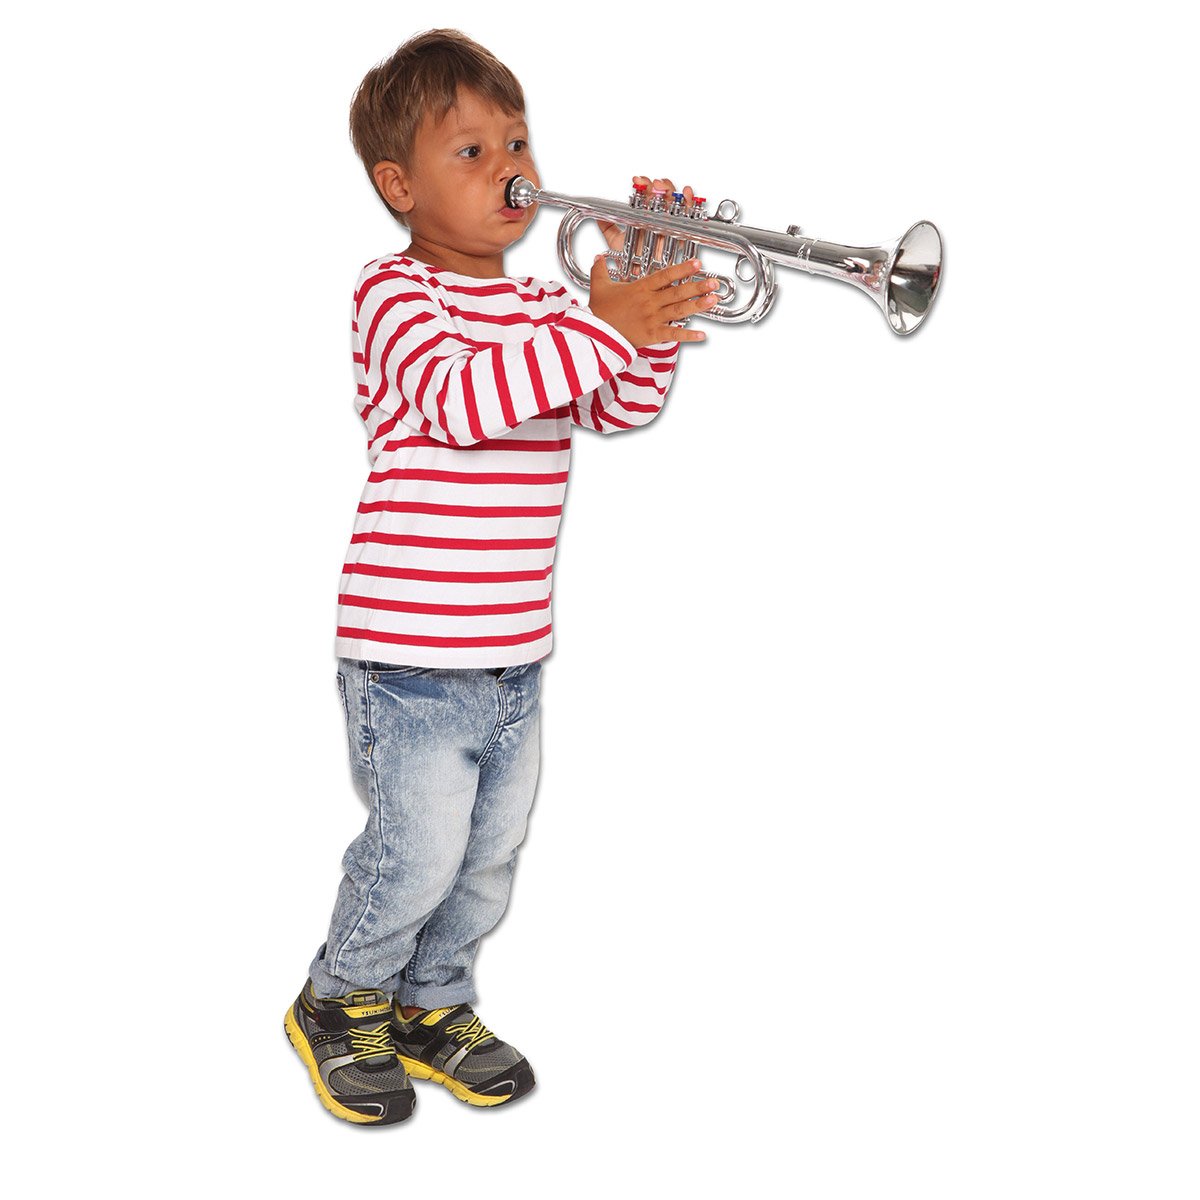 Jouet Trompette Pour Enfant, 4 Clés Colorées Jouet Trompette Pour